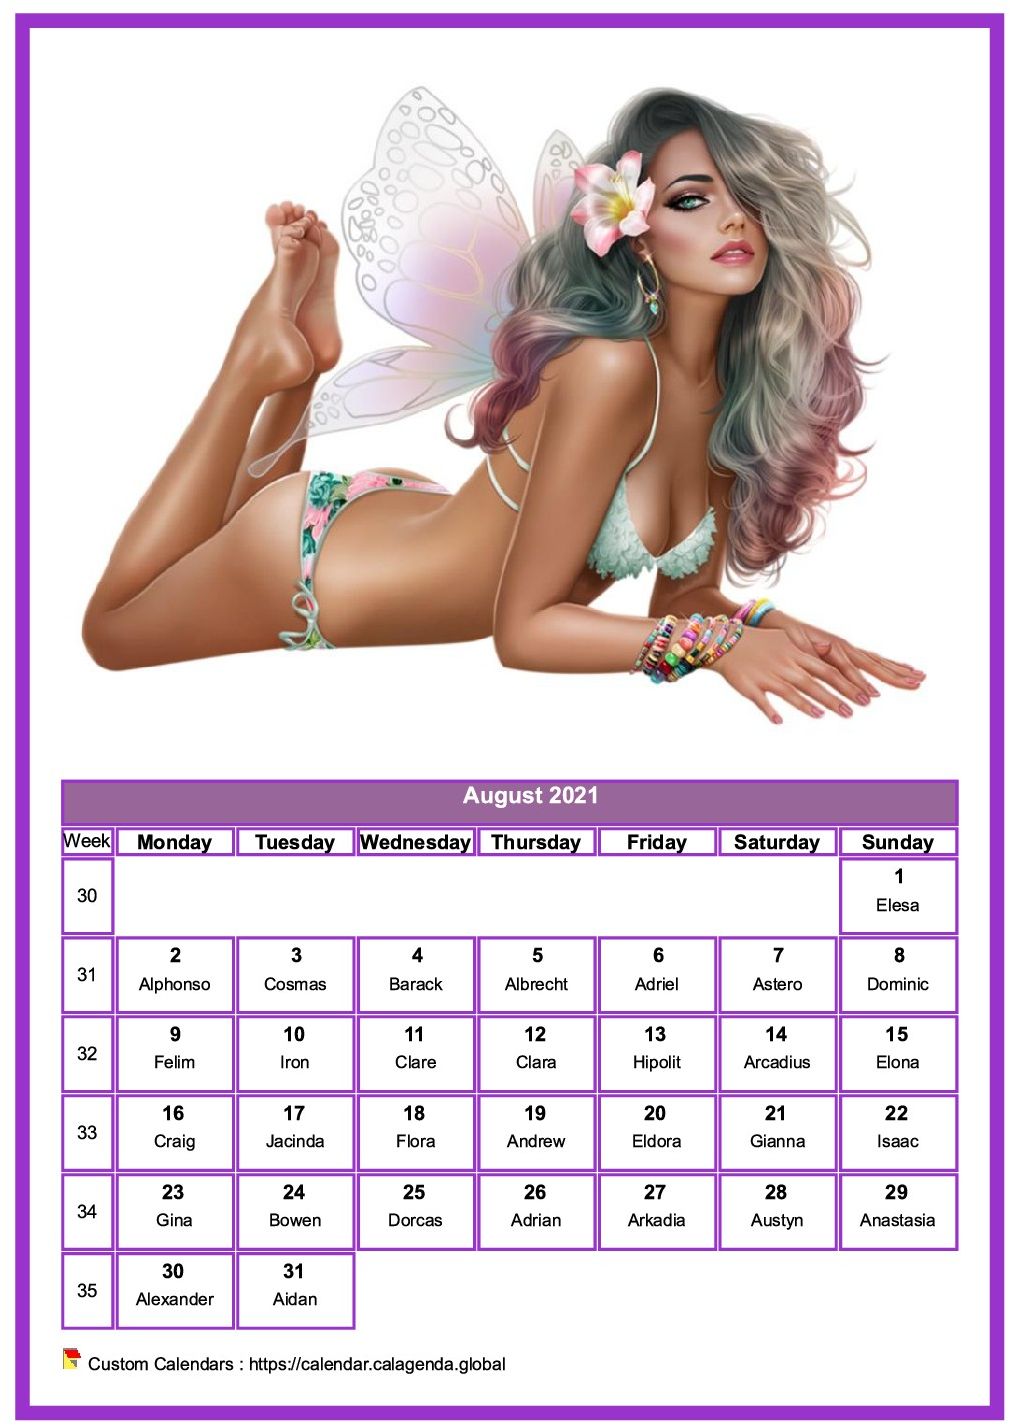 Calendar August 2021 women